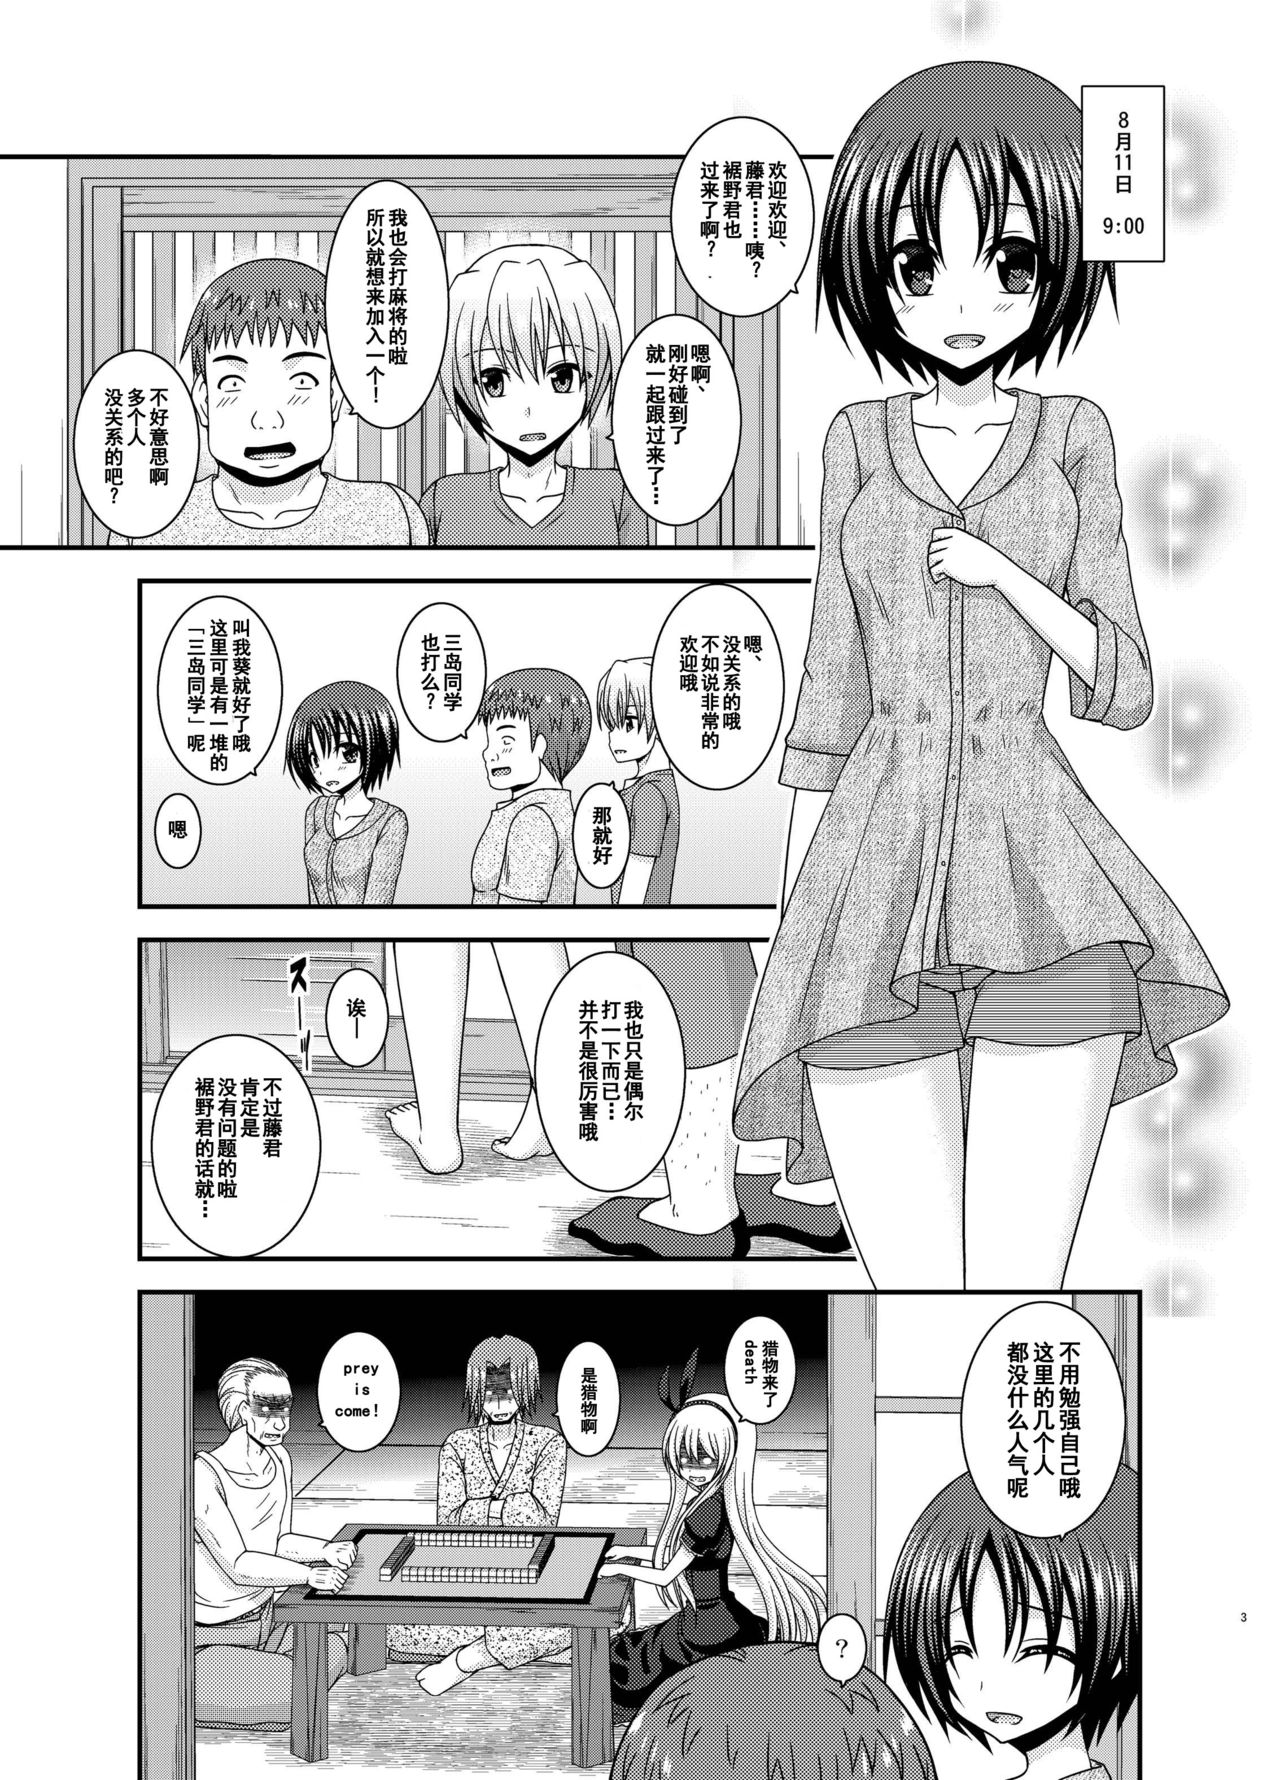 387451 manga